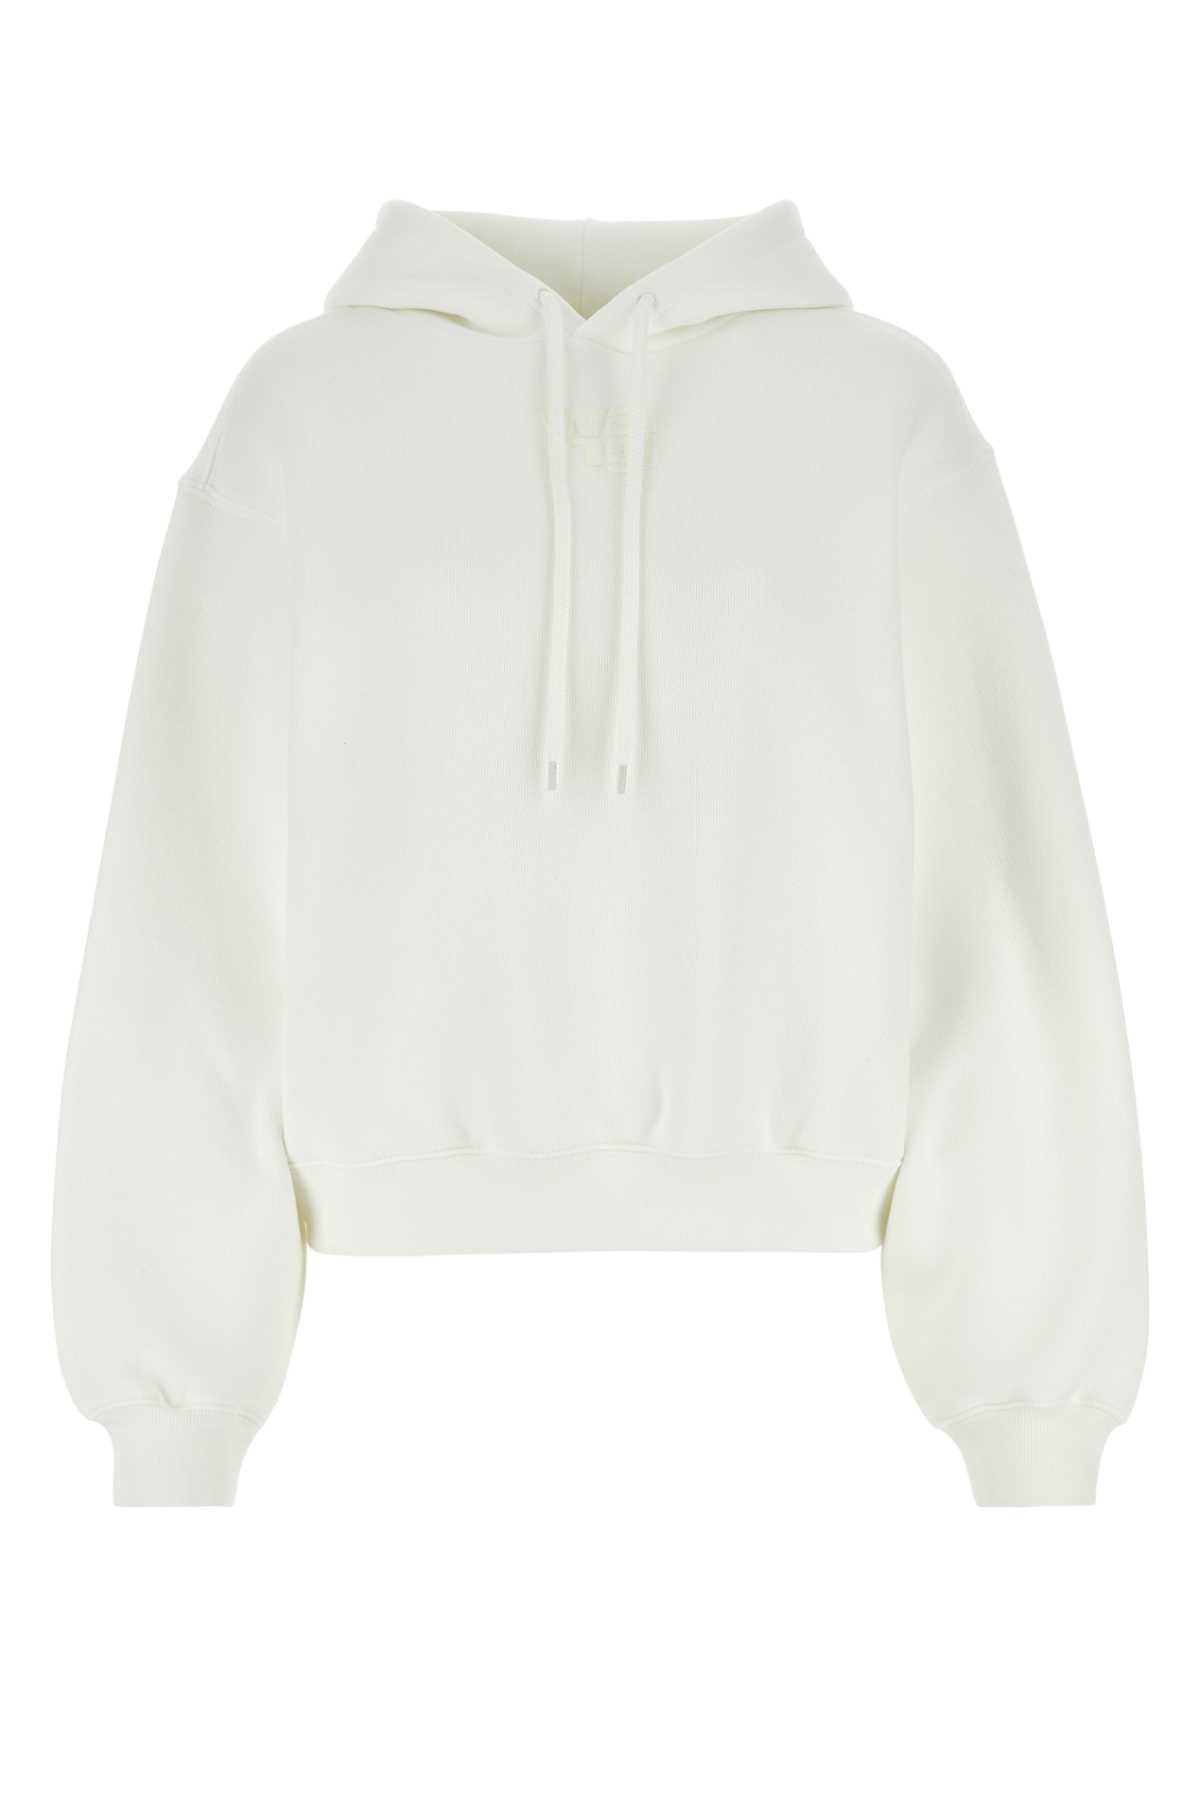 White Cotton Blend Oversize Sweatshirt